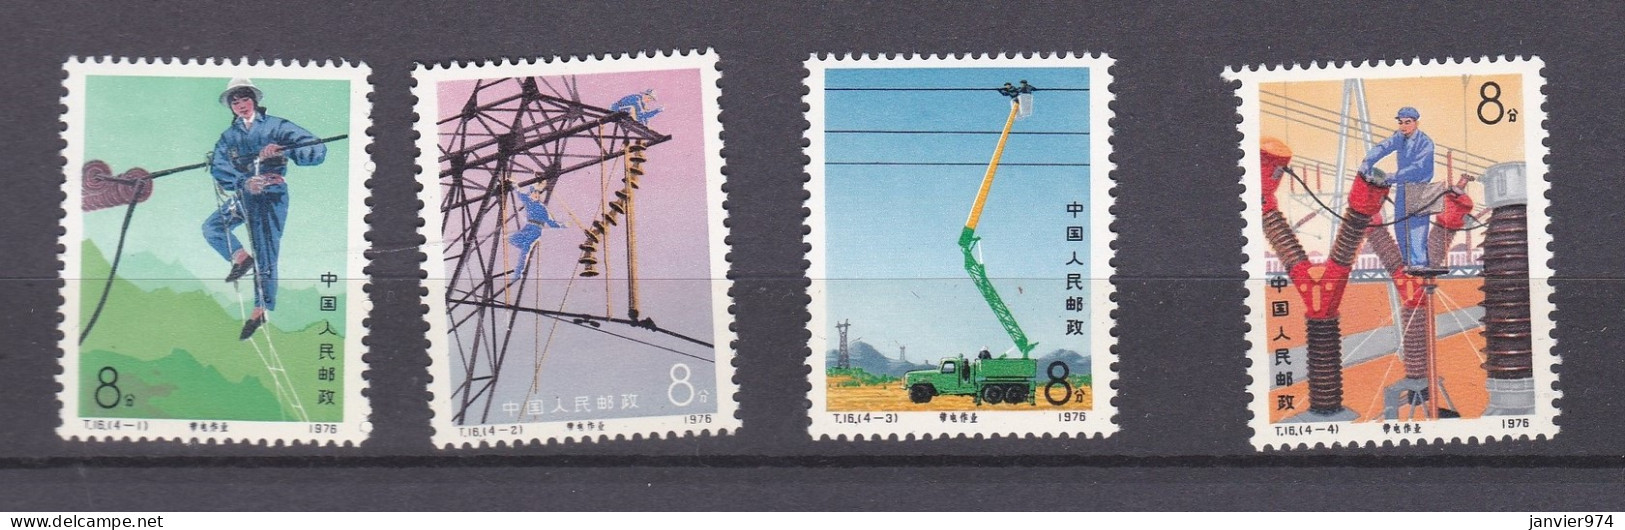 Chine 1976 La Serie Complete  Entretien Des Lignes électriques, 4 Timbres Neufs 1296 à 1299 - Neufs